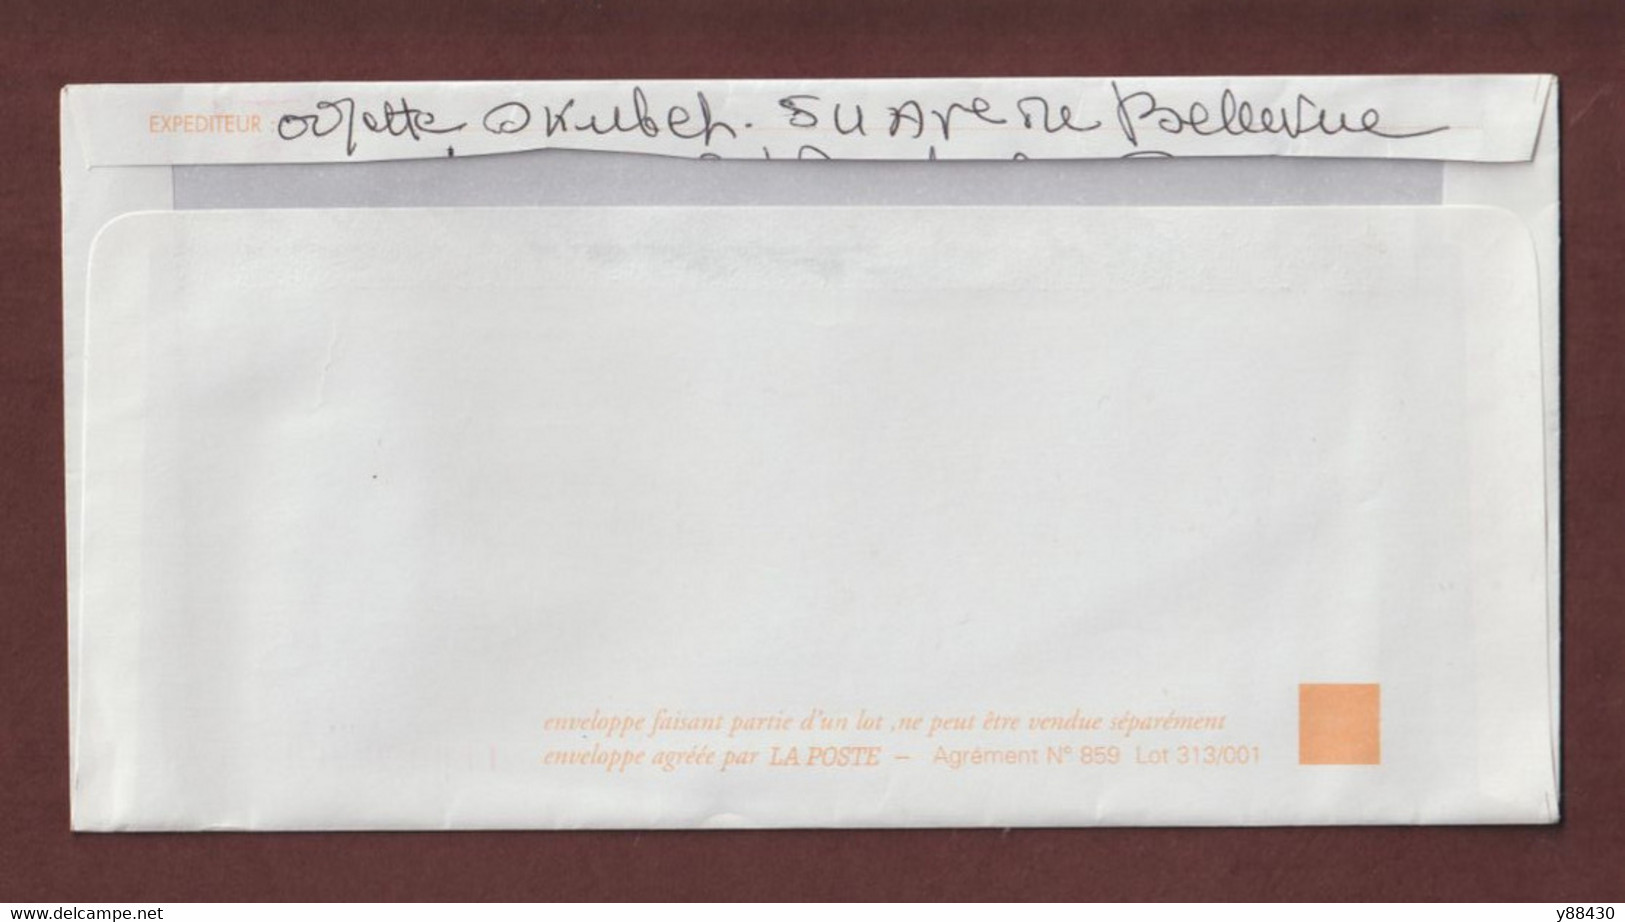 2958 De 1995 - PAP - Oblitéré - N° Dos : 859 Lot 313/001 - Repiquage  Jean DE LA FONTAINE - Scannes Face & Dos - Bigewerkte Envelop  (voor 1995)